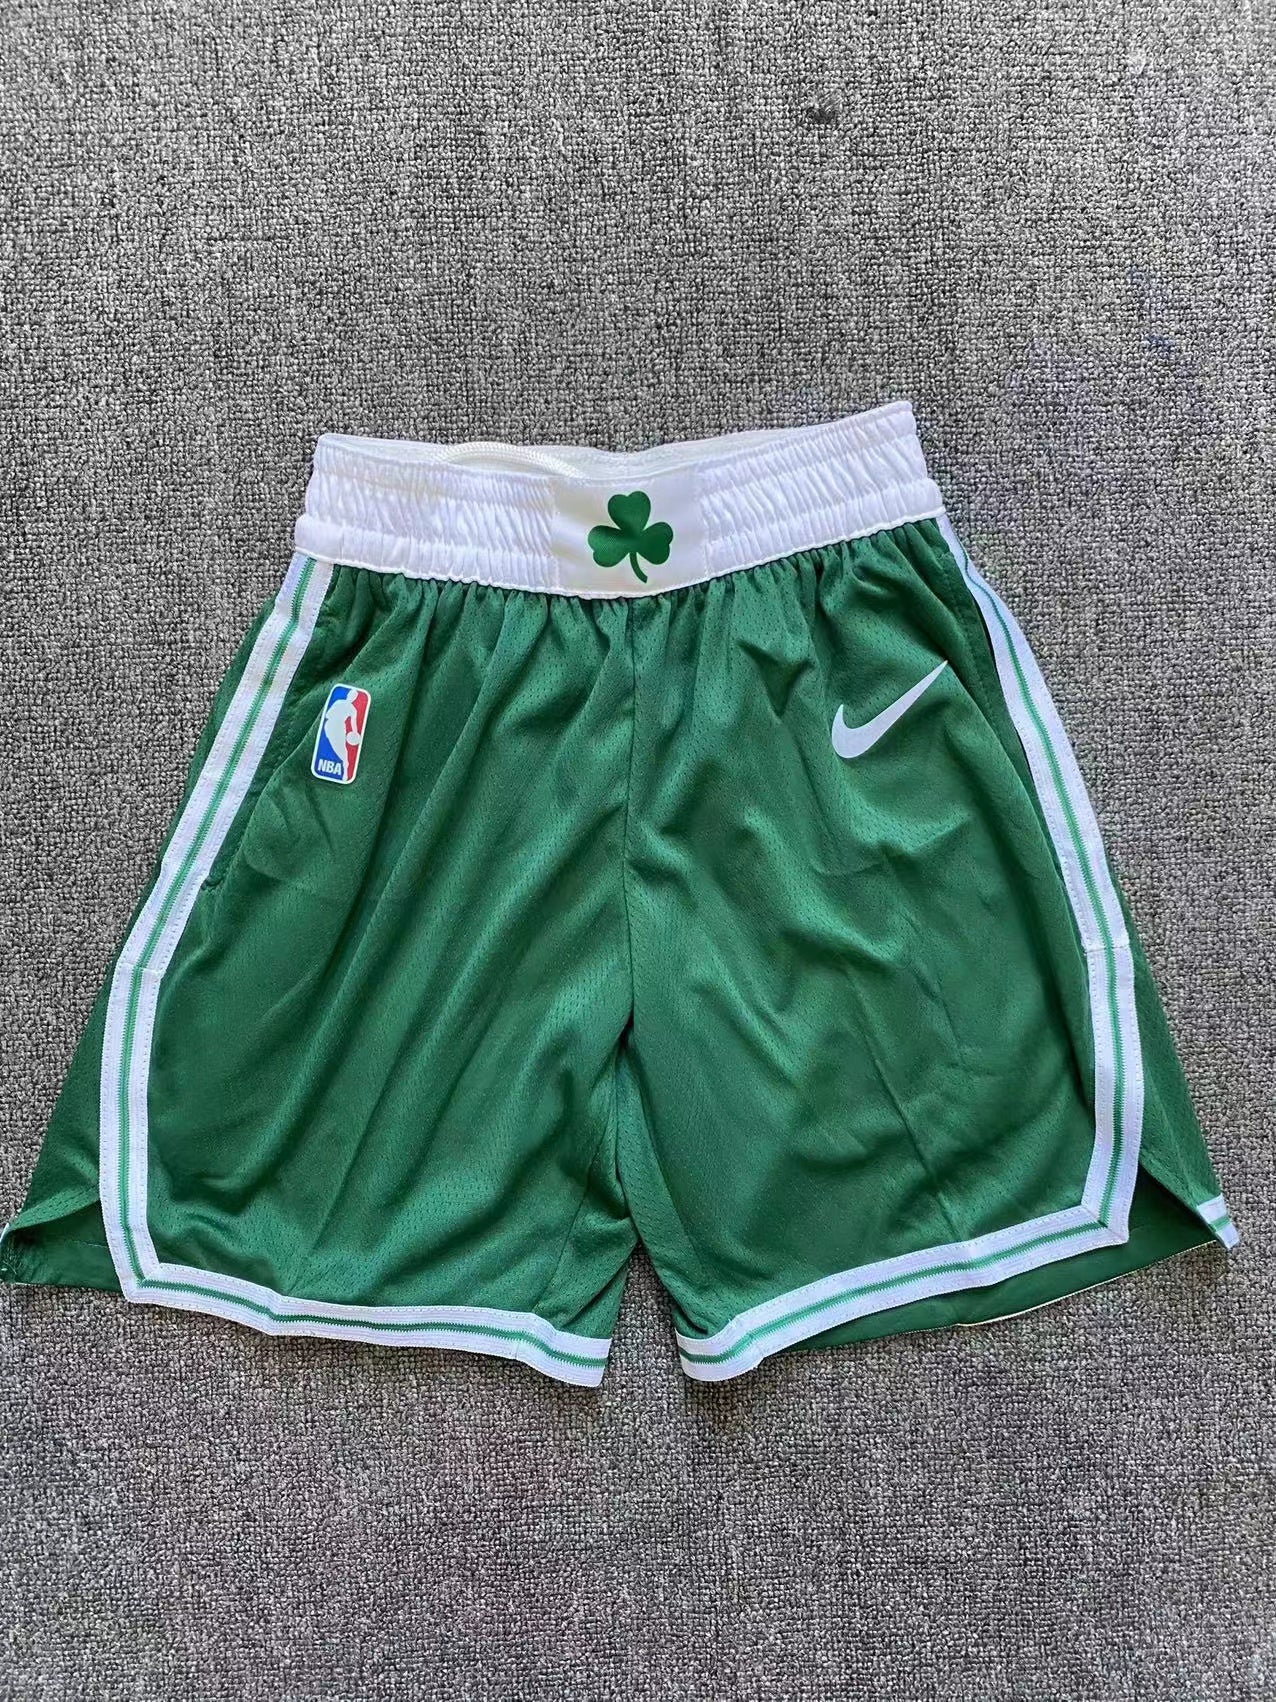 PANTALONCINI Boston Celtics